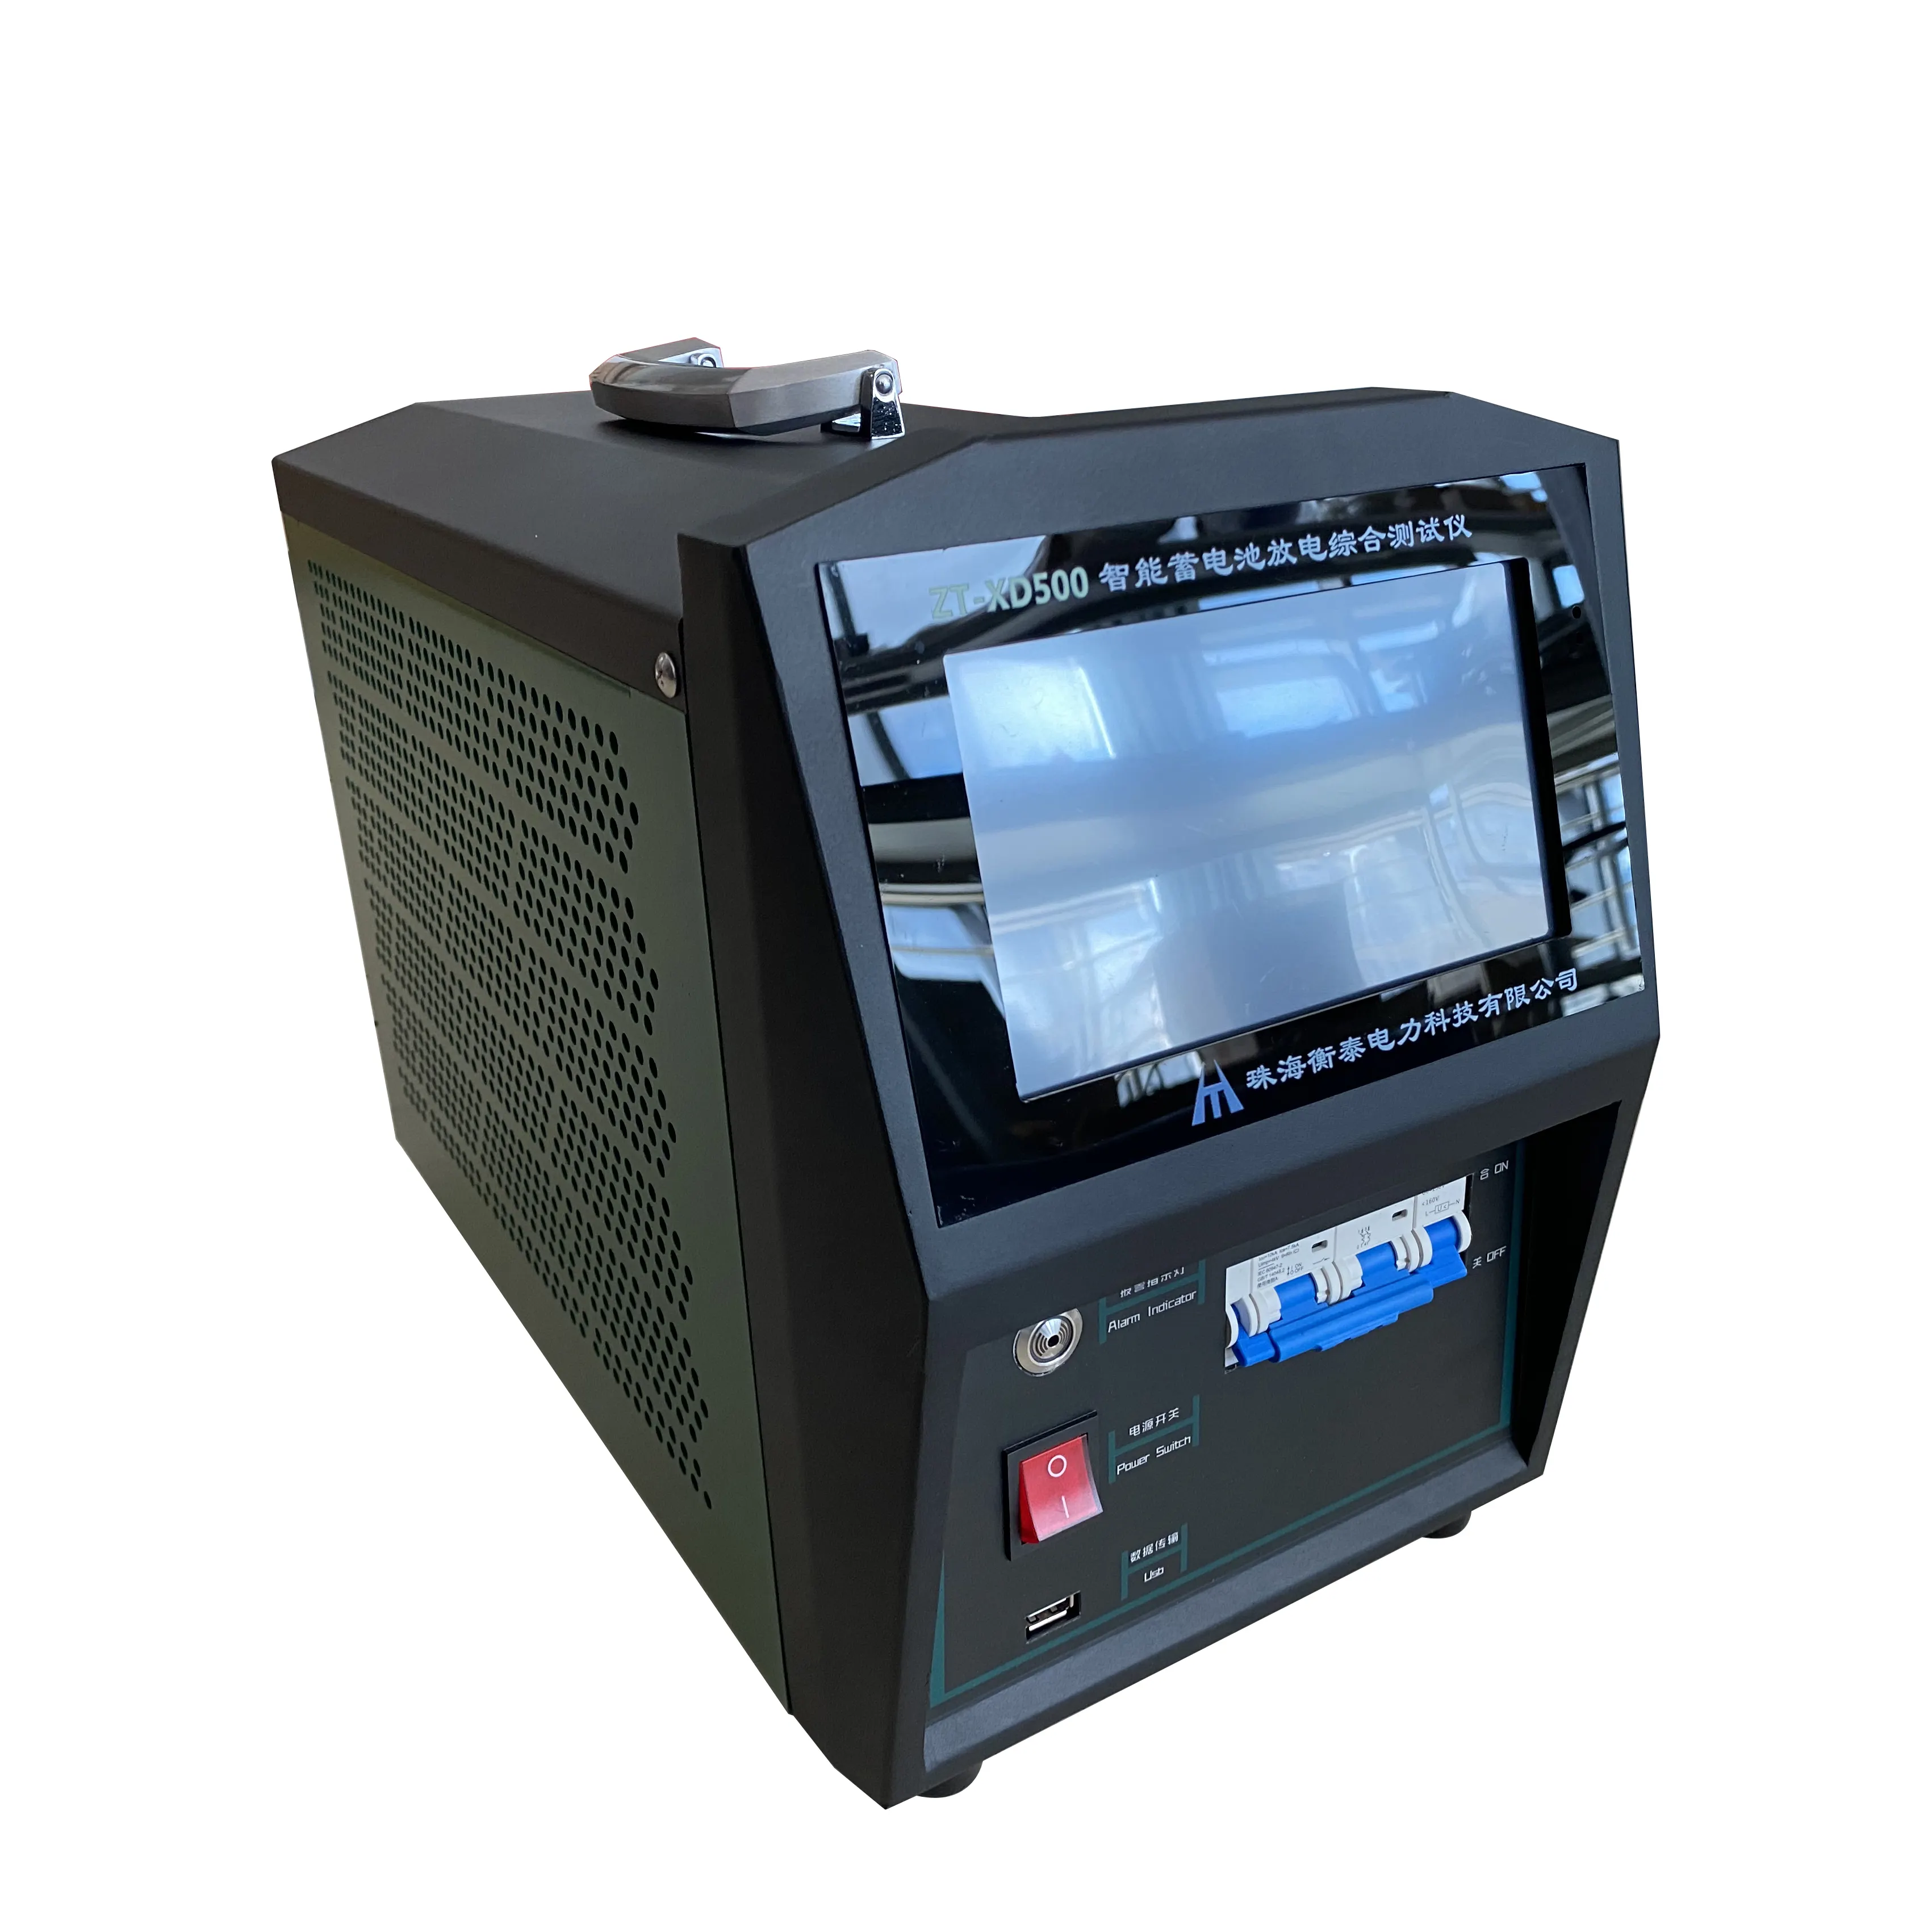 Probador de carga y descarga de Zt-xd500battery, instrumento de medición electrónico de alta precisión de capacidad de batería, Hengtai 0-100A OEM